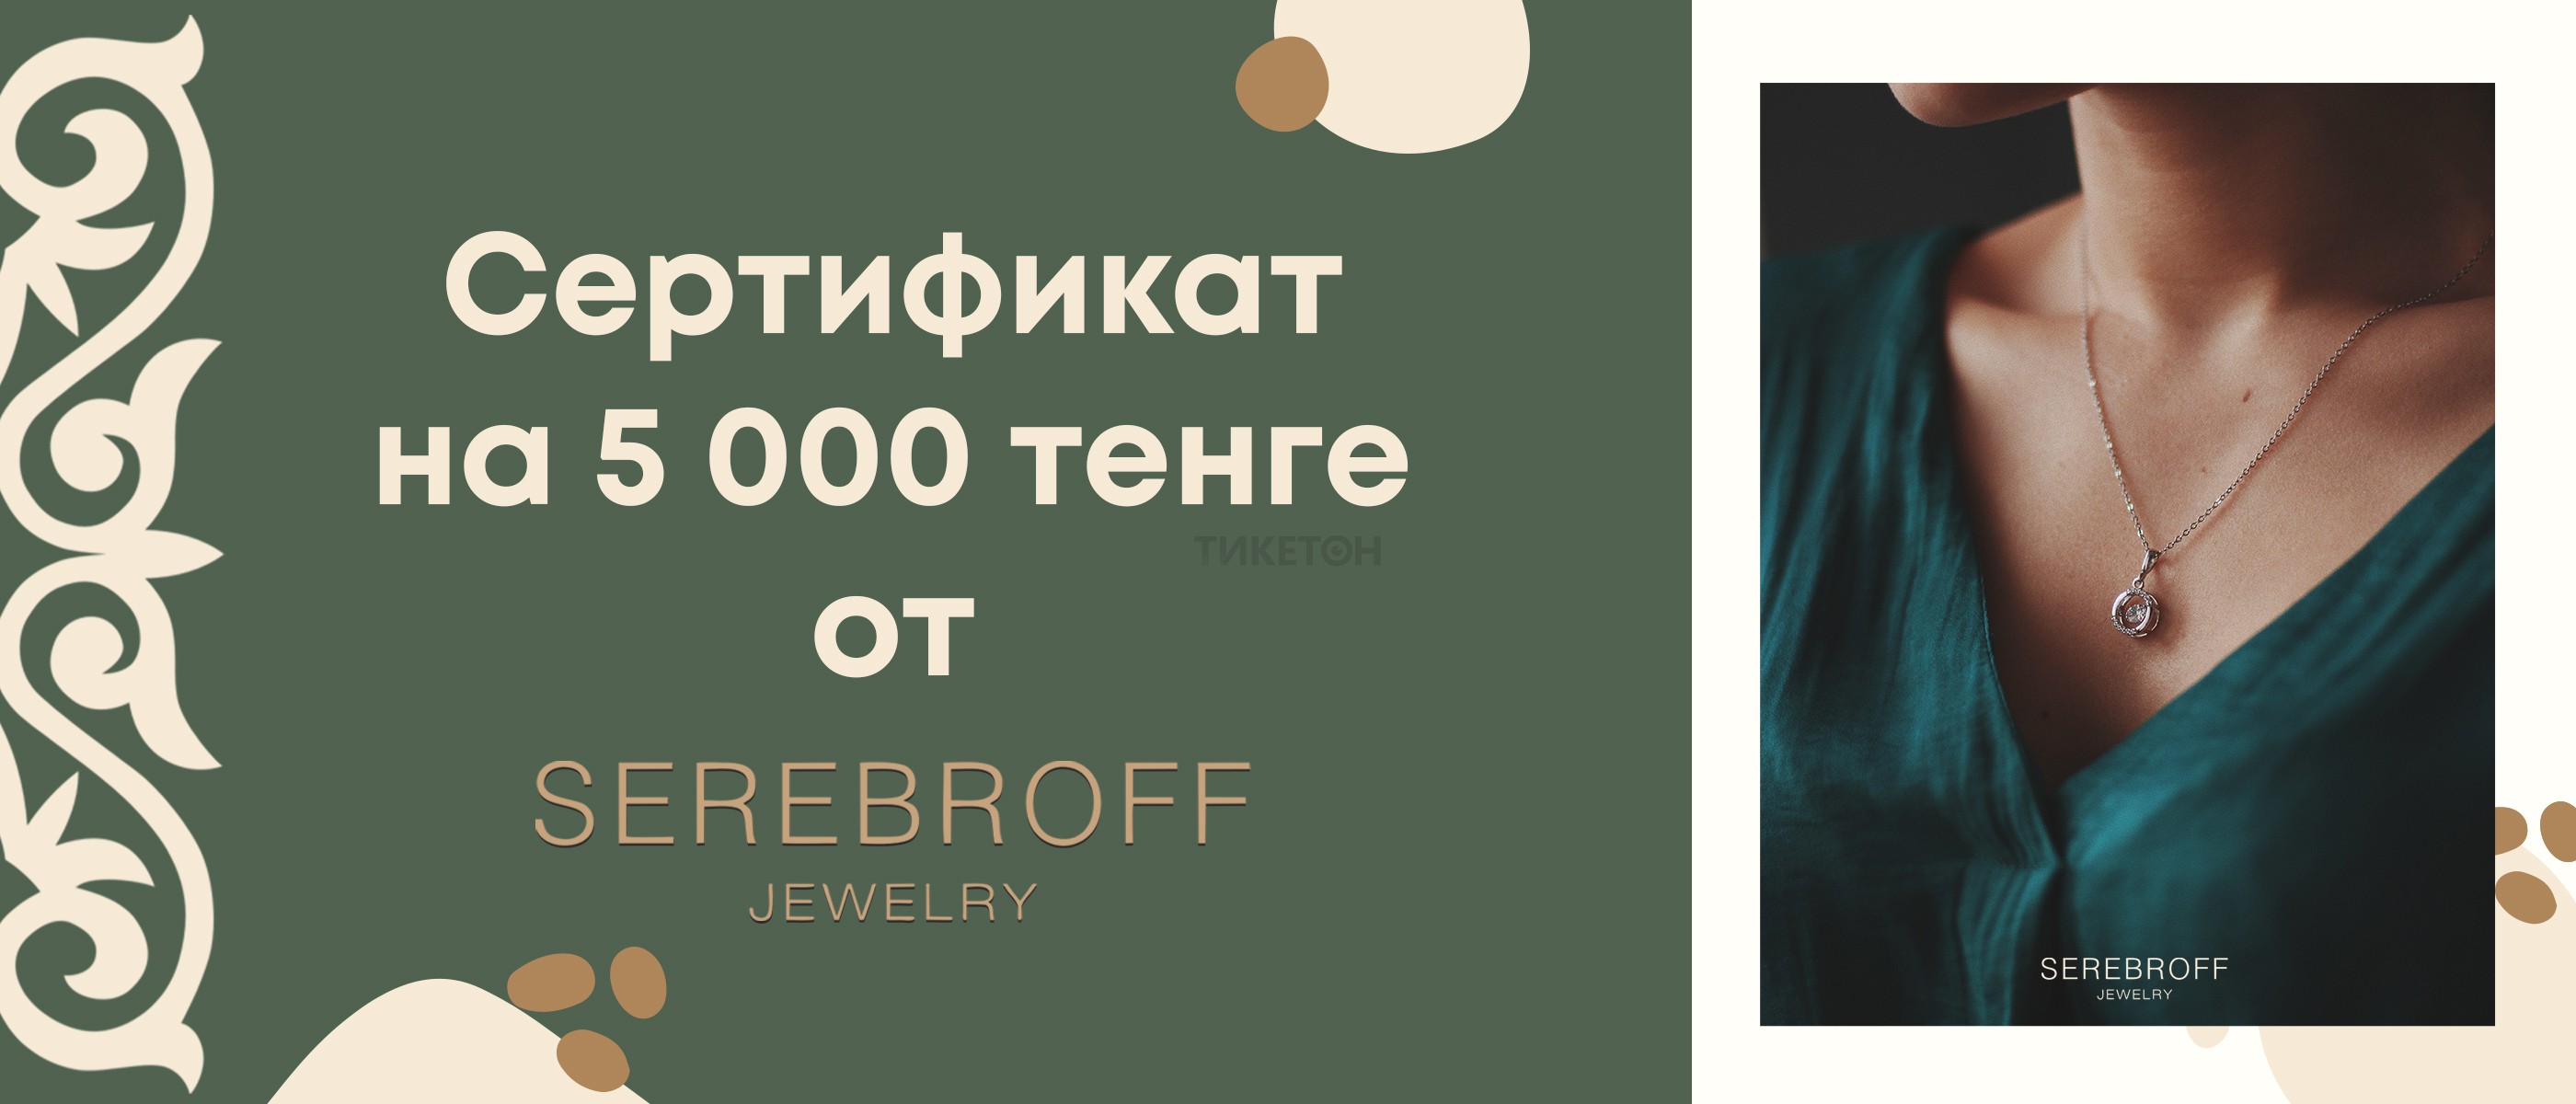 Дарим сертификат на 5 000тг на покупки в Serebroff!